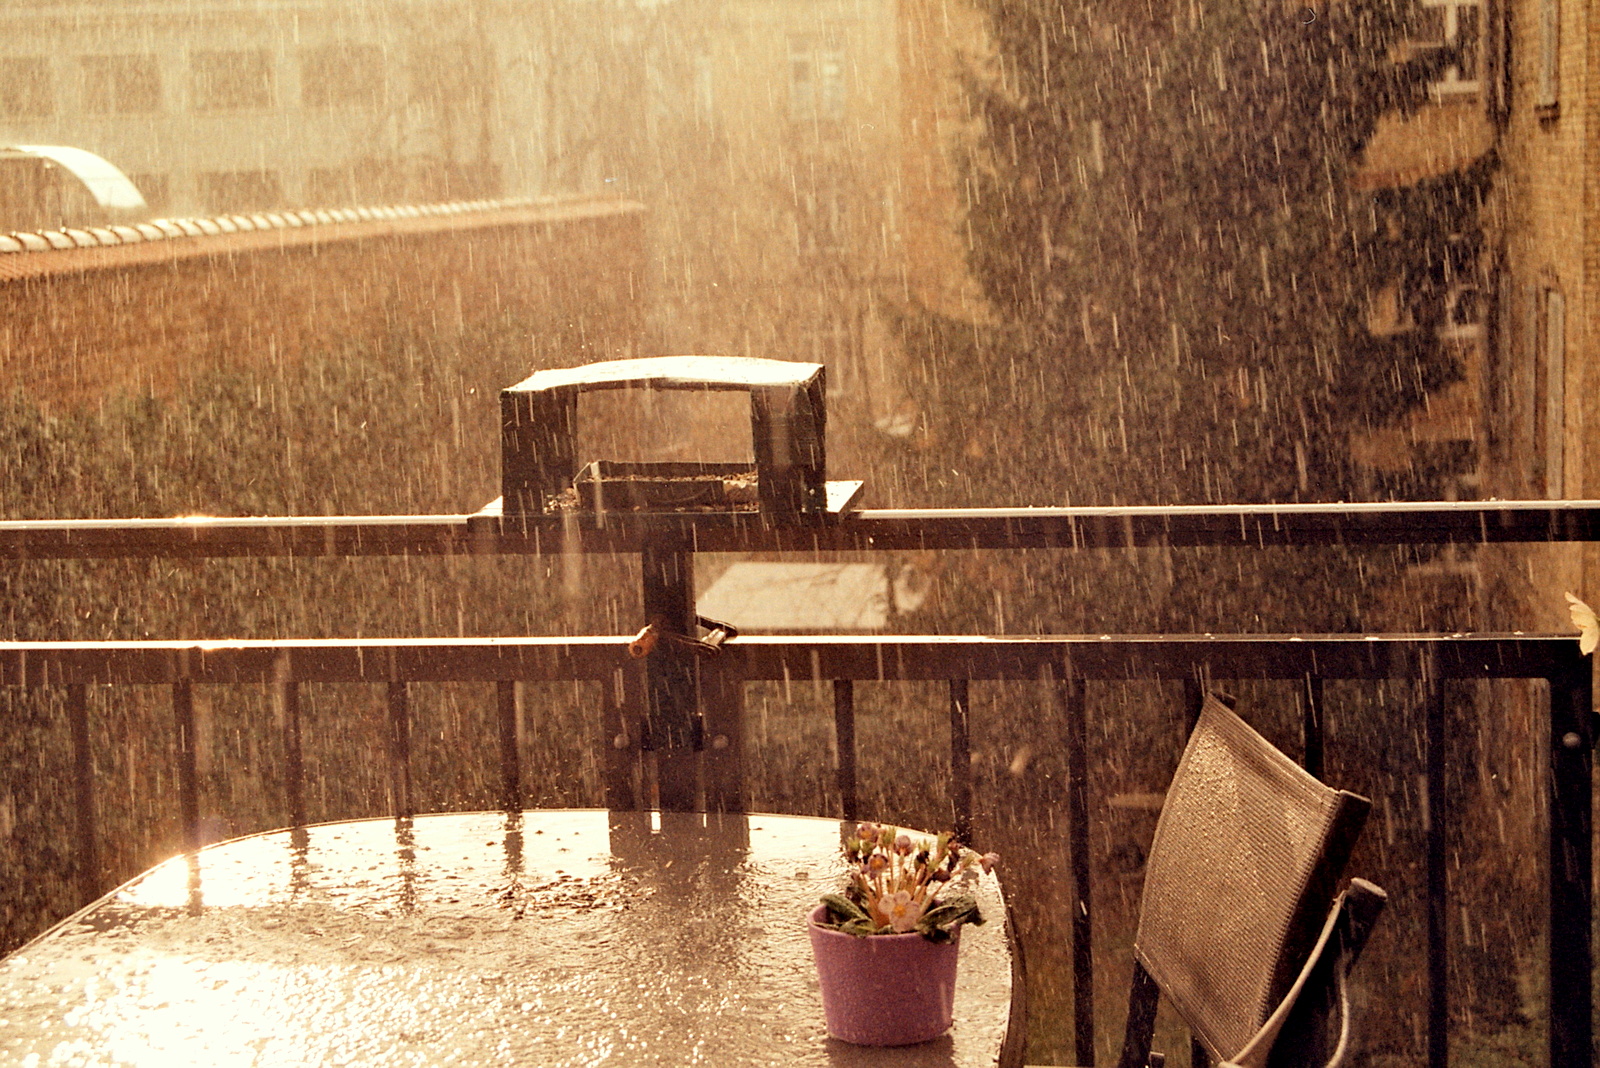 Regen und Sonne sind was schönes :)
<br />
Luce